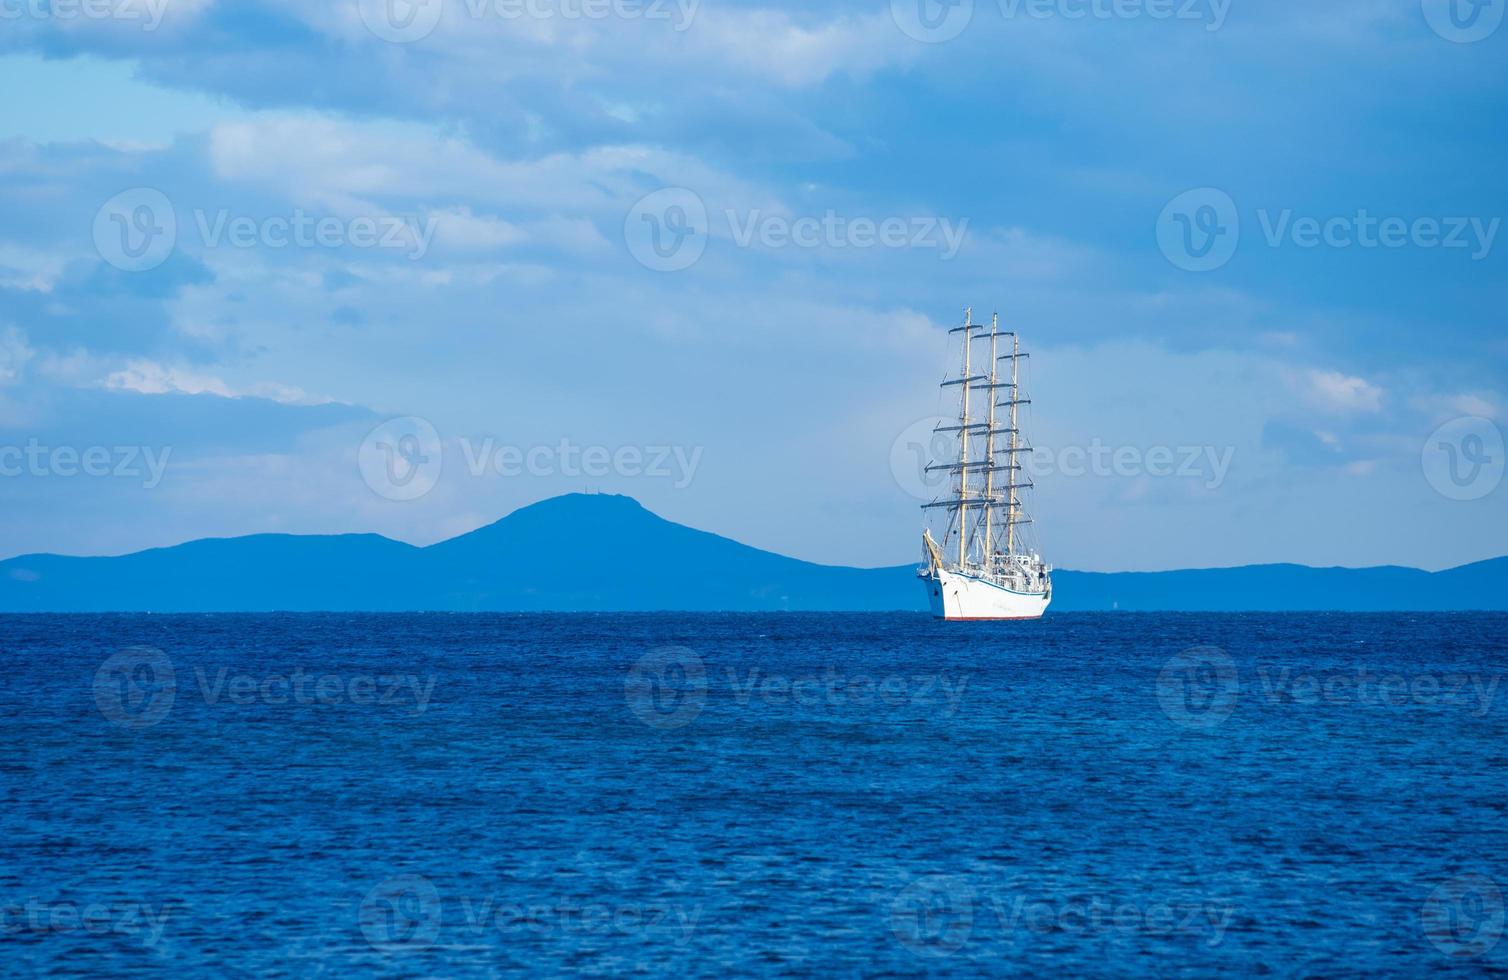 zeegezicht met een prachtige zeilboot aan de horizon foto